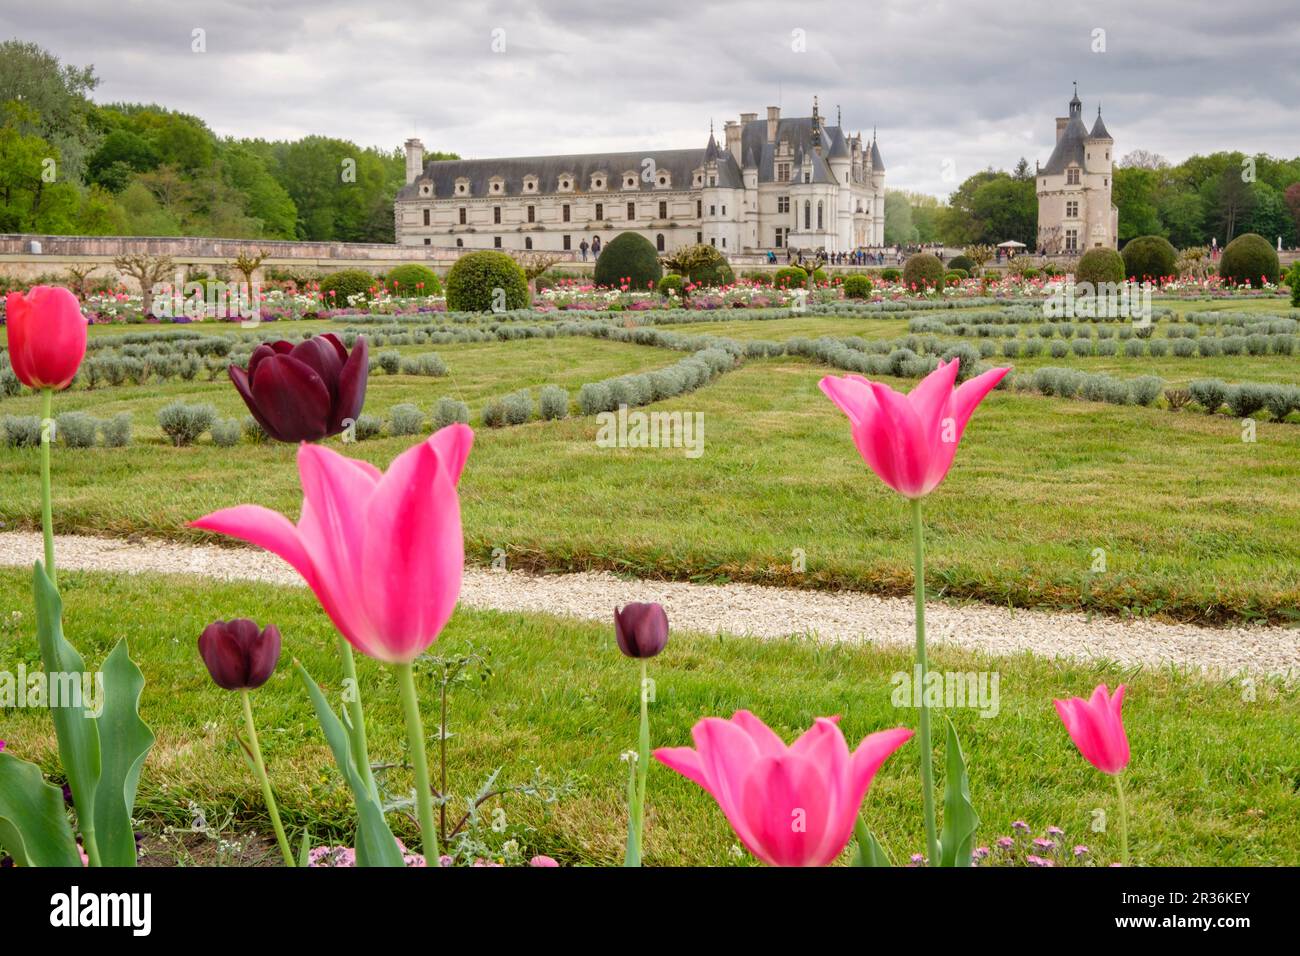 Garden of Diana de Poitiers, Château de Chenonceau, 16th century, Chenonceaux, Indre-et-Loire department, France, Western Europe. Stock Photo